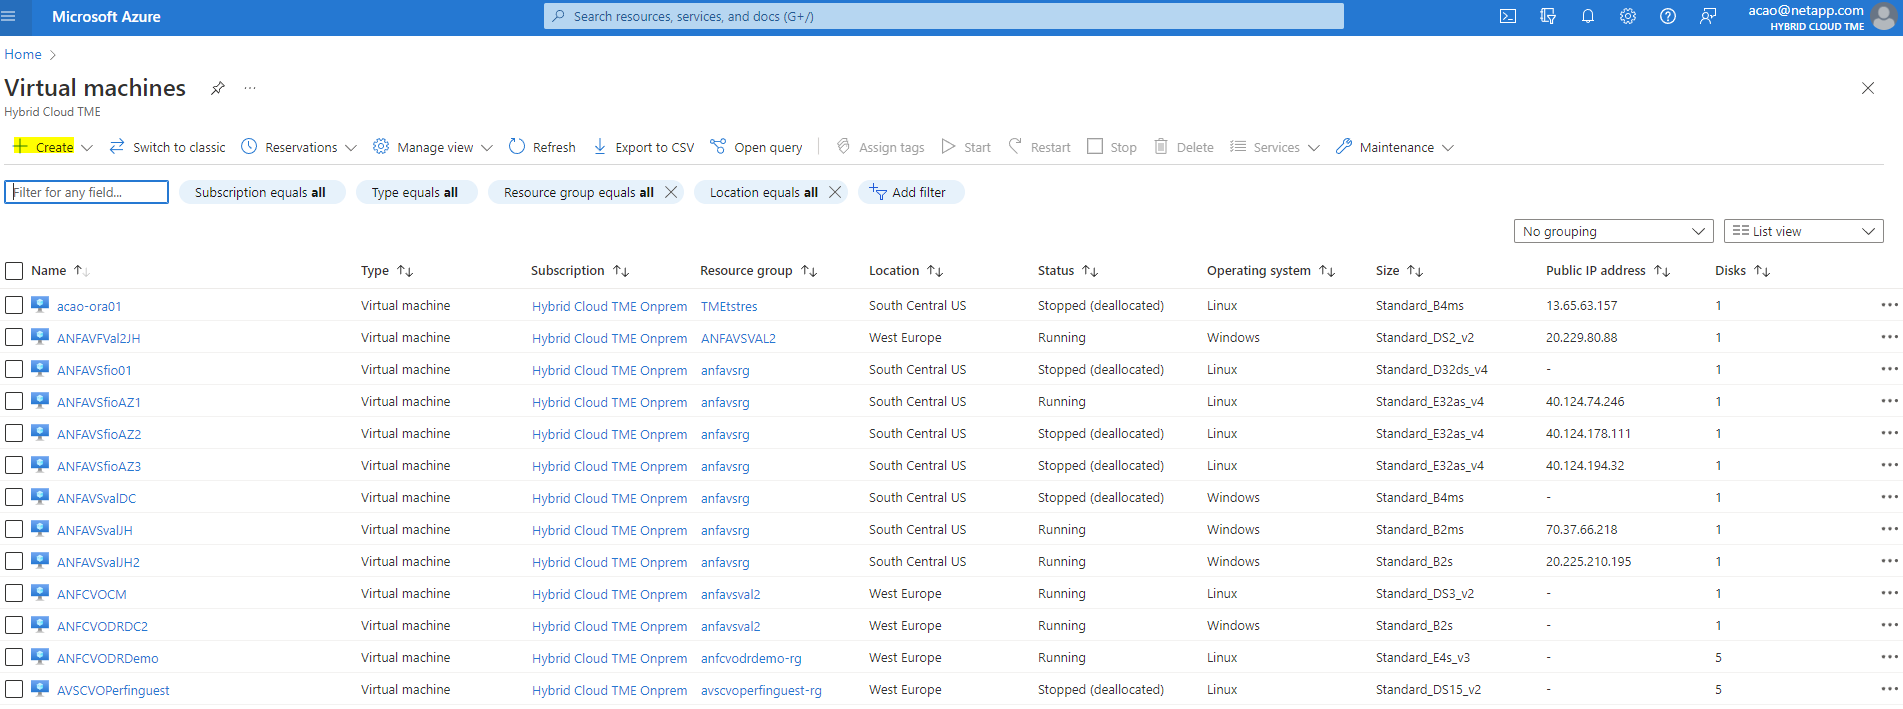 Questa schermata mostra l'elenco delle macchine virtuali Azure disponibili.